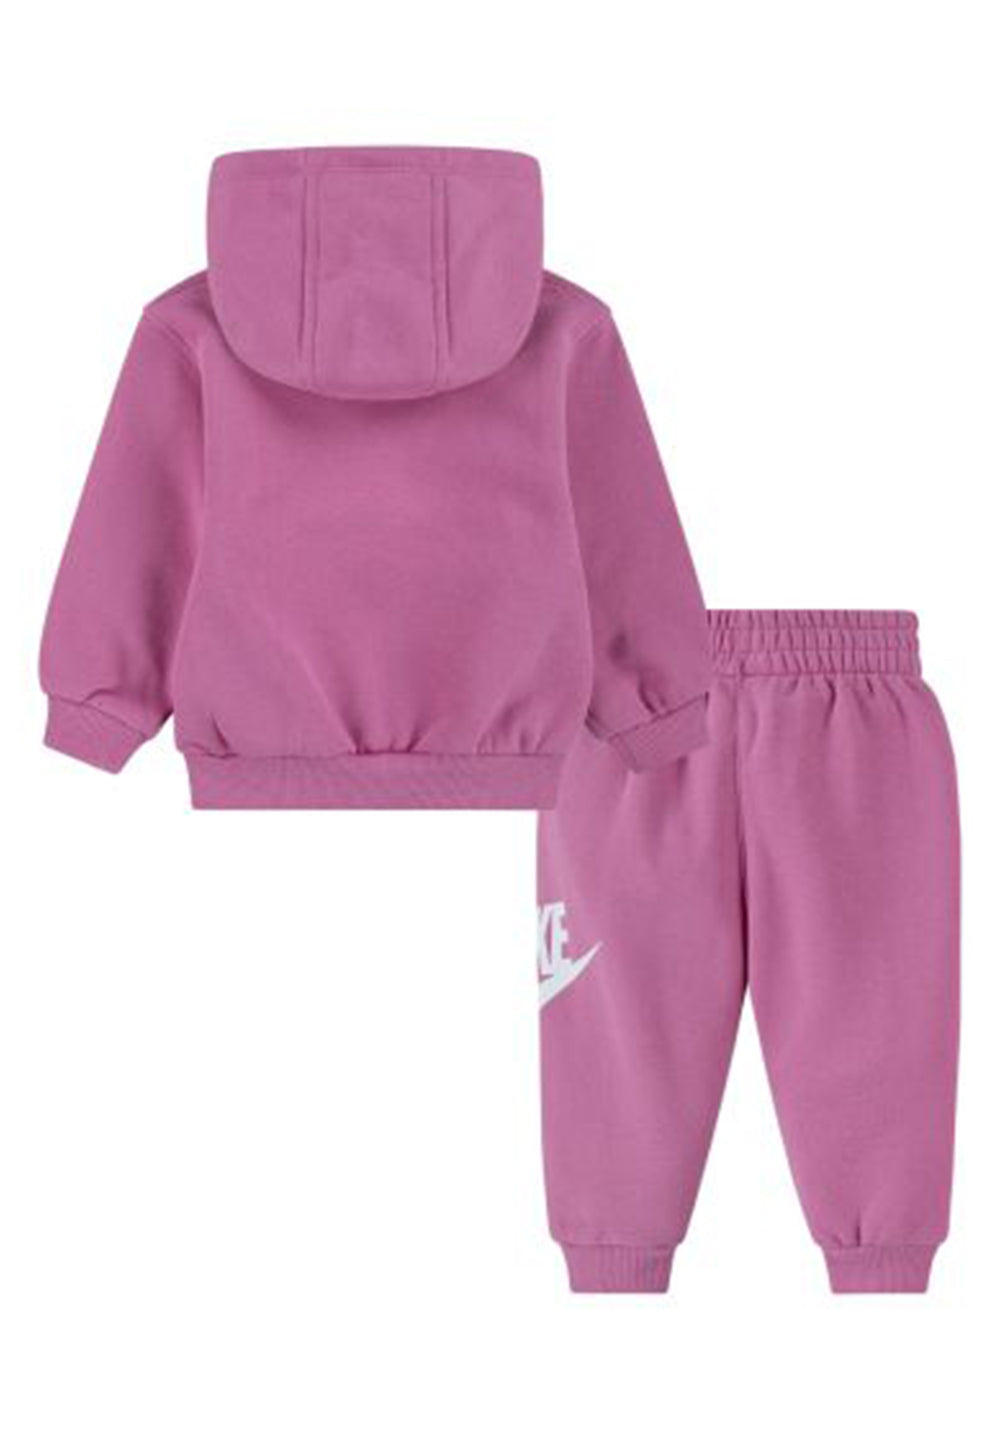 Fuchsia sweatshirt set for baby girl